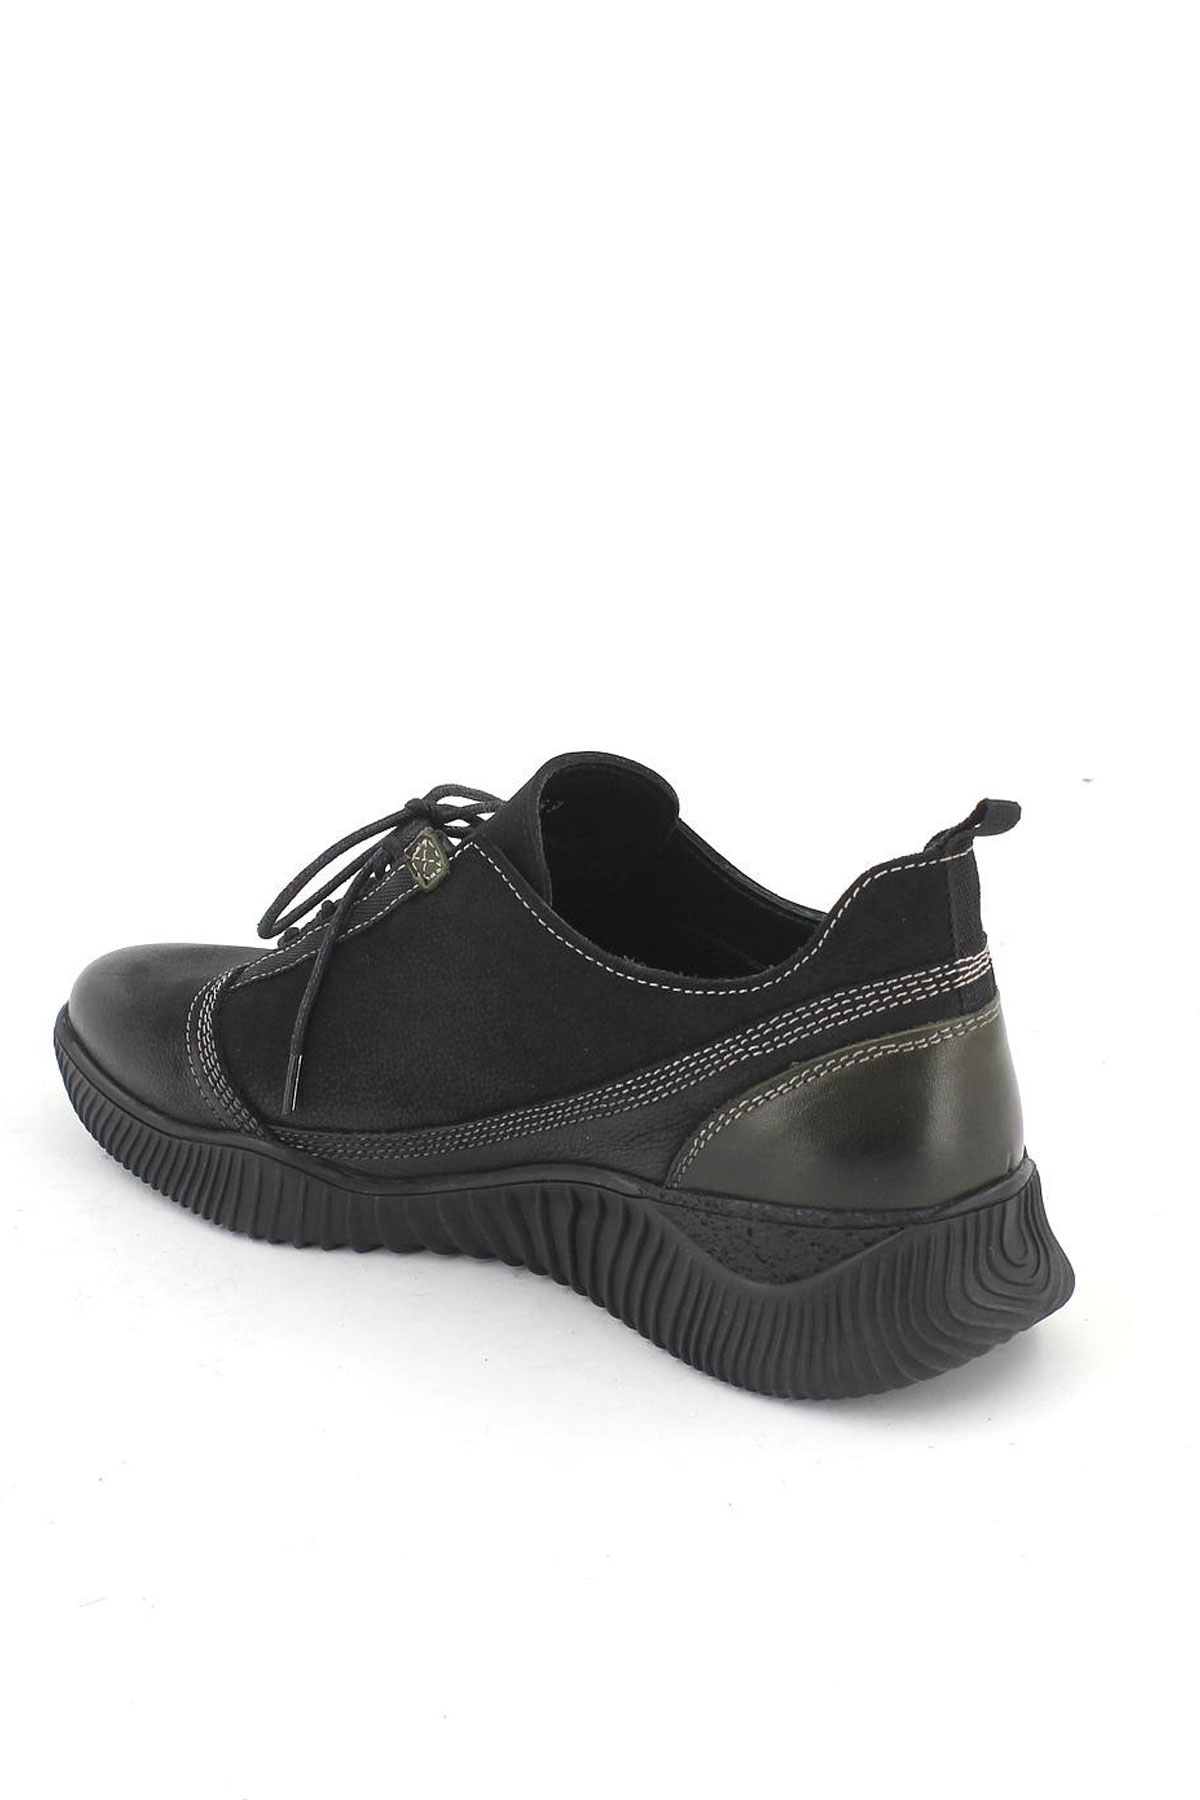 Kadın Comfort Deri Ayakkabı Siyah Yeşil 1953859K - Thumbnail